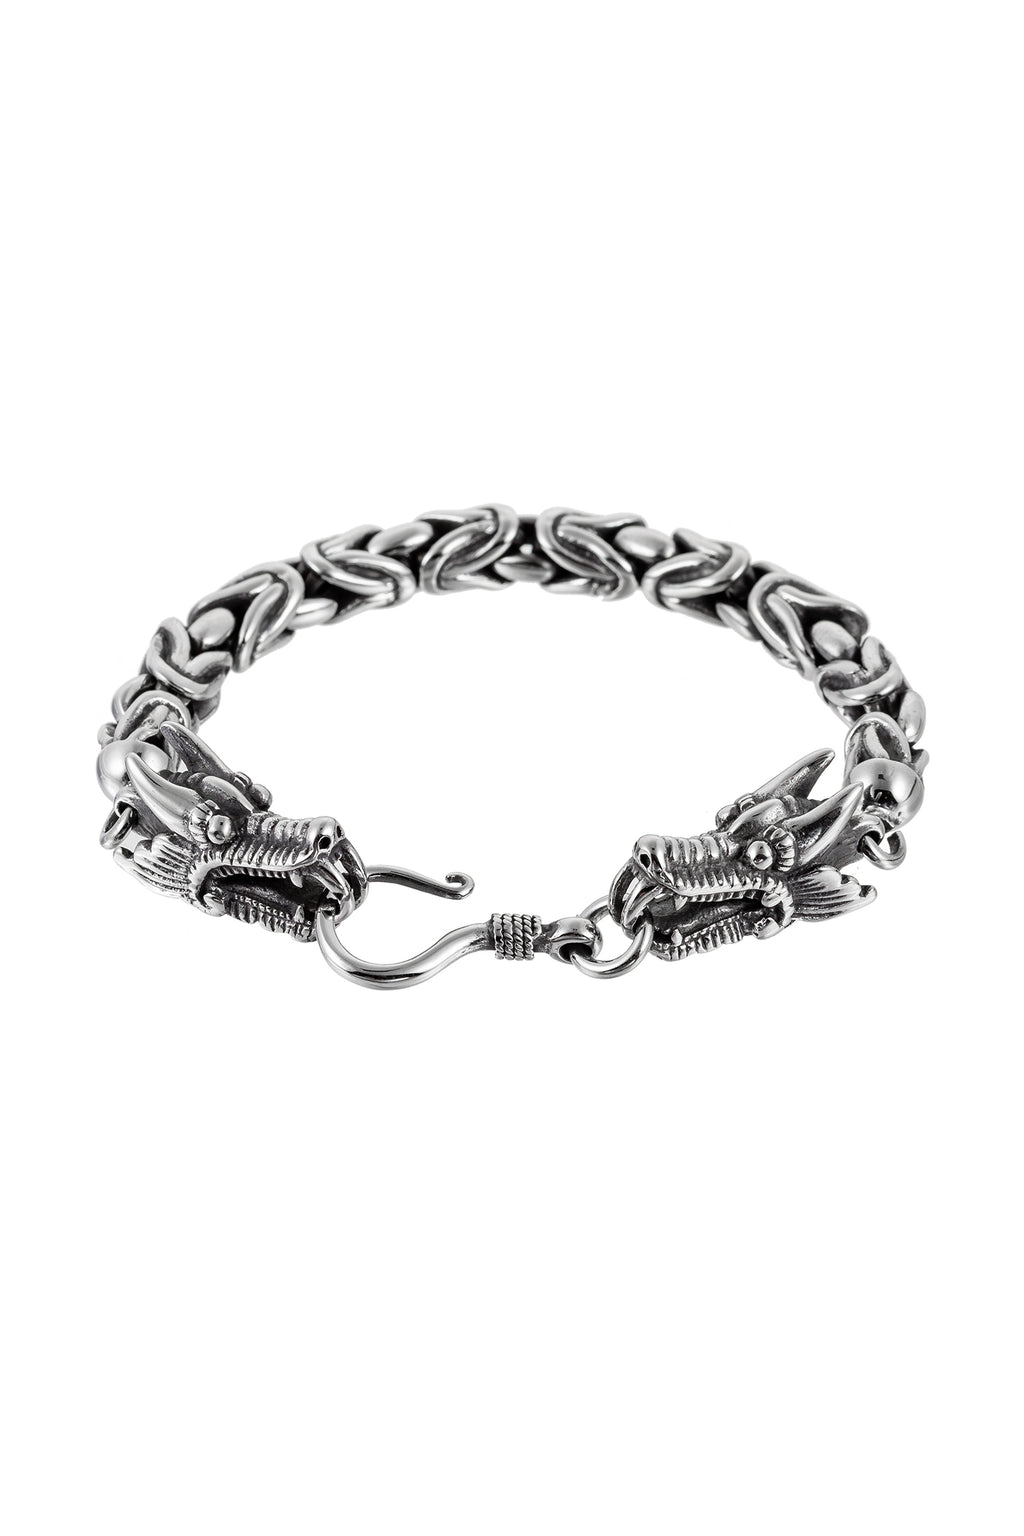 Dragon Bracelet Mens - 2 For Sale on 1stDibs | dragon bracelets